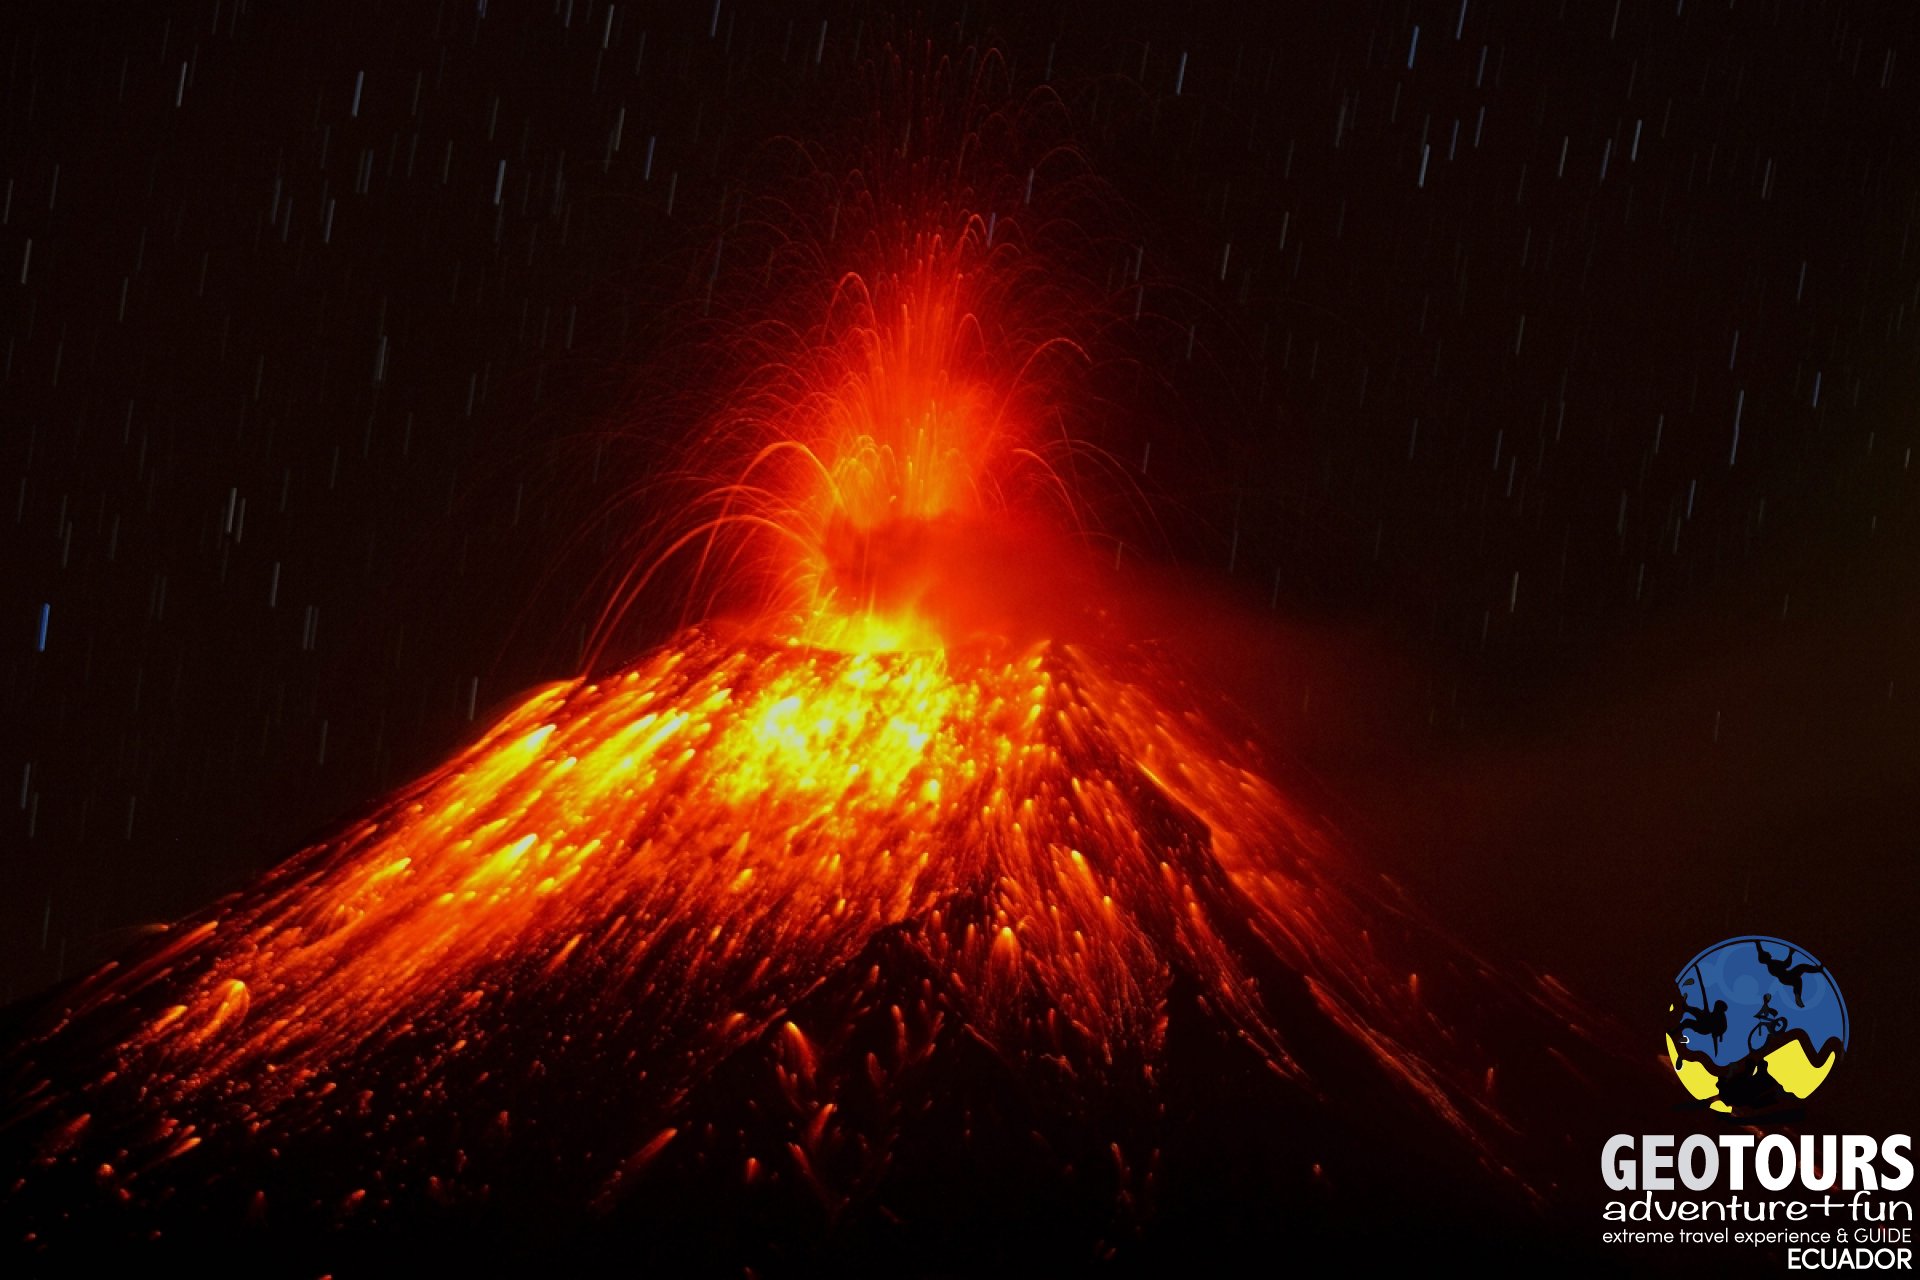  Volcanes activos en Ecuador